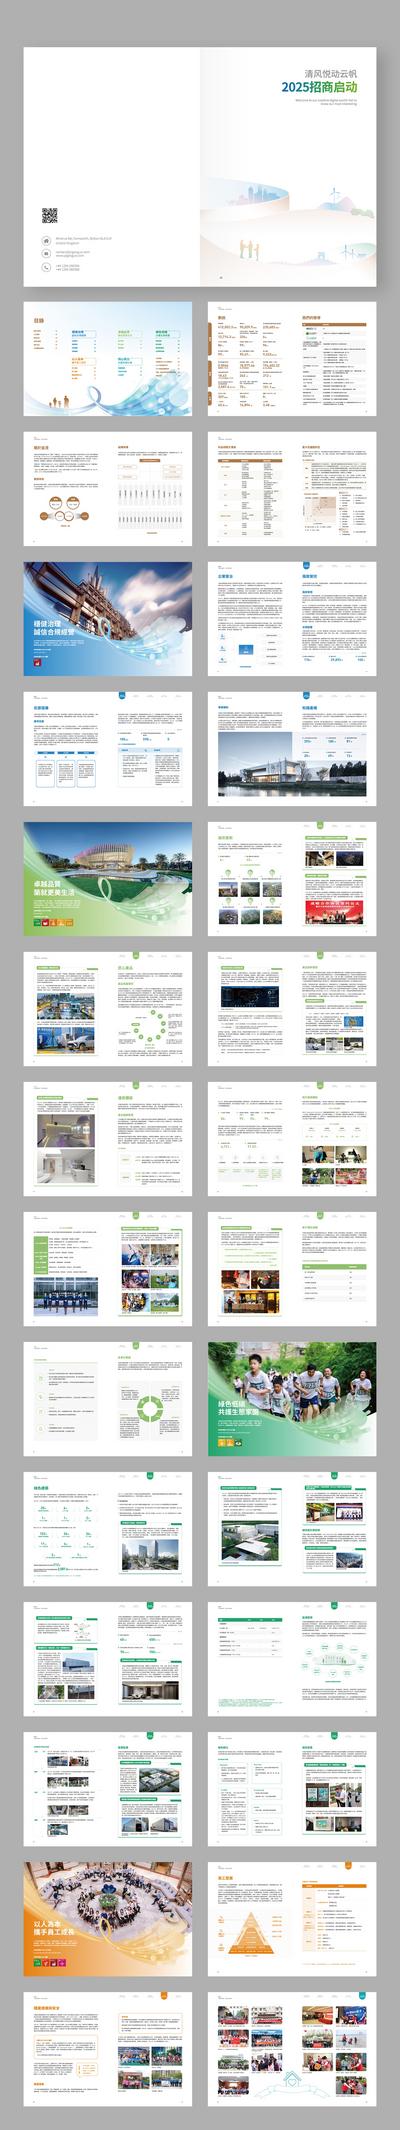 南门网 画册 宣传册 房地产 新能源 智能 科技 环保 健康 简约